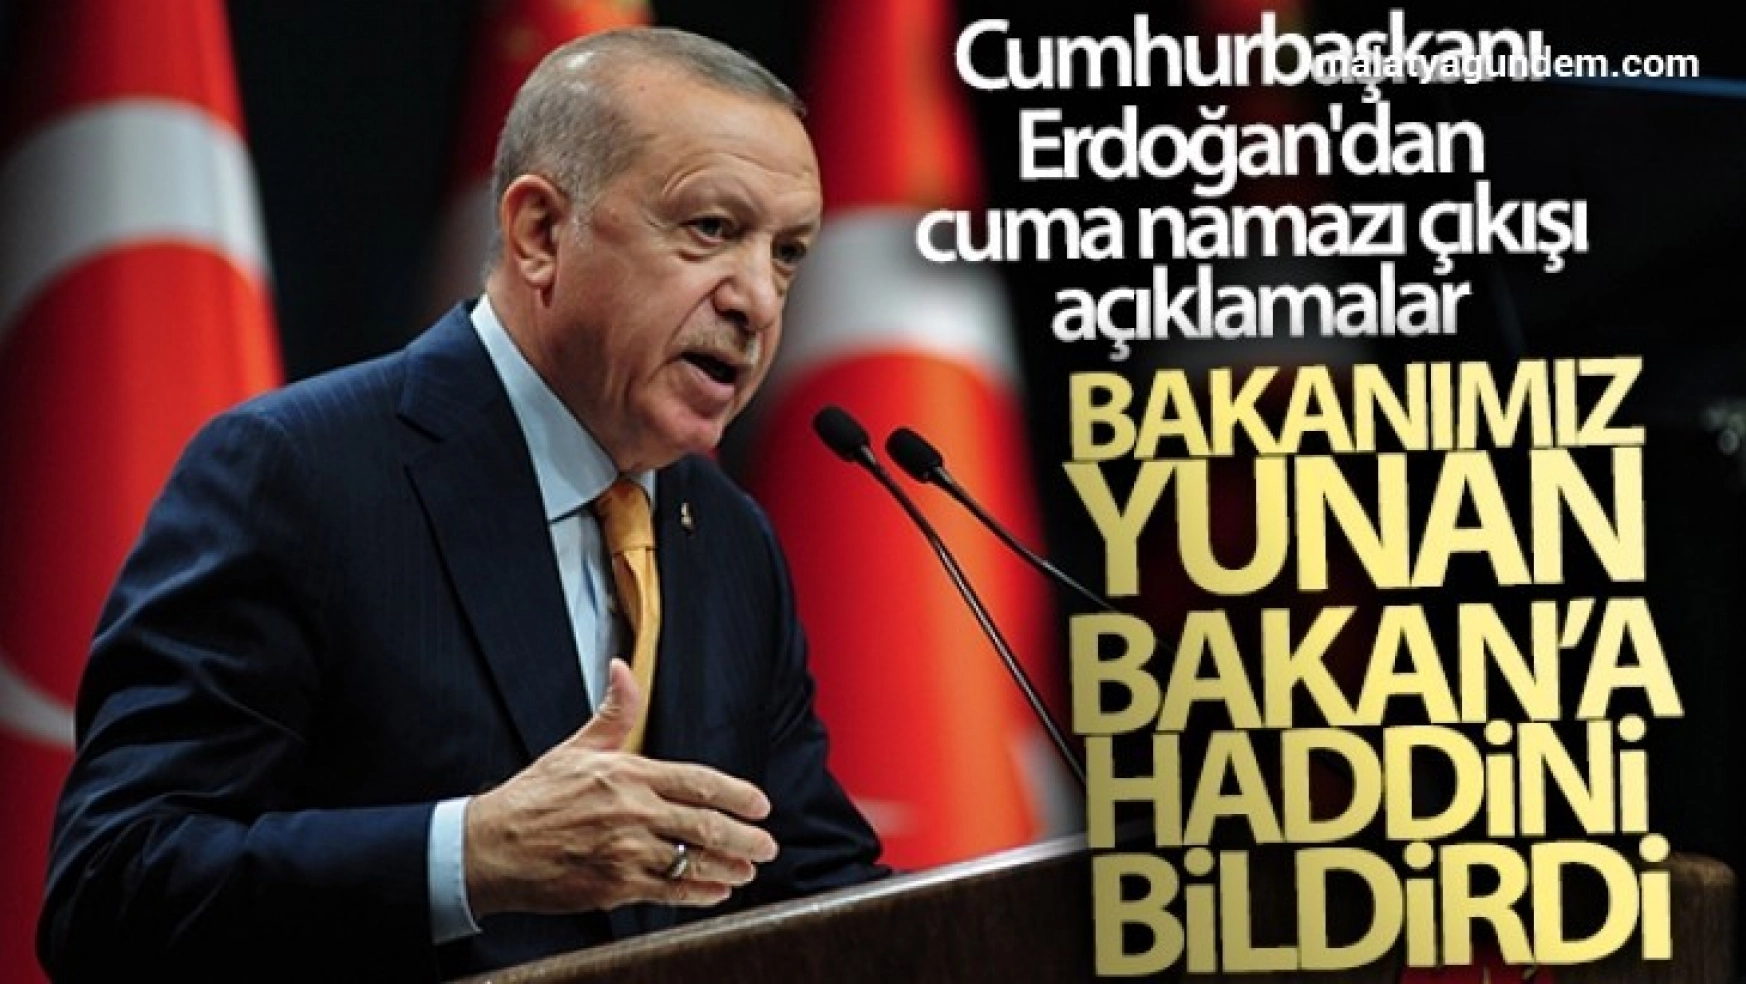 Cumhurbaşkanı Erdoğan'dan cuma namazı çıkışı açıklamalar!